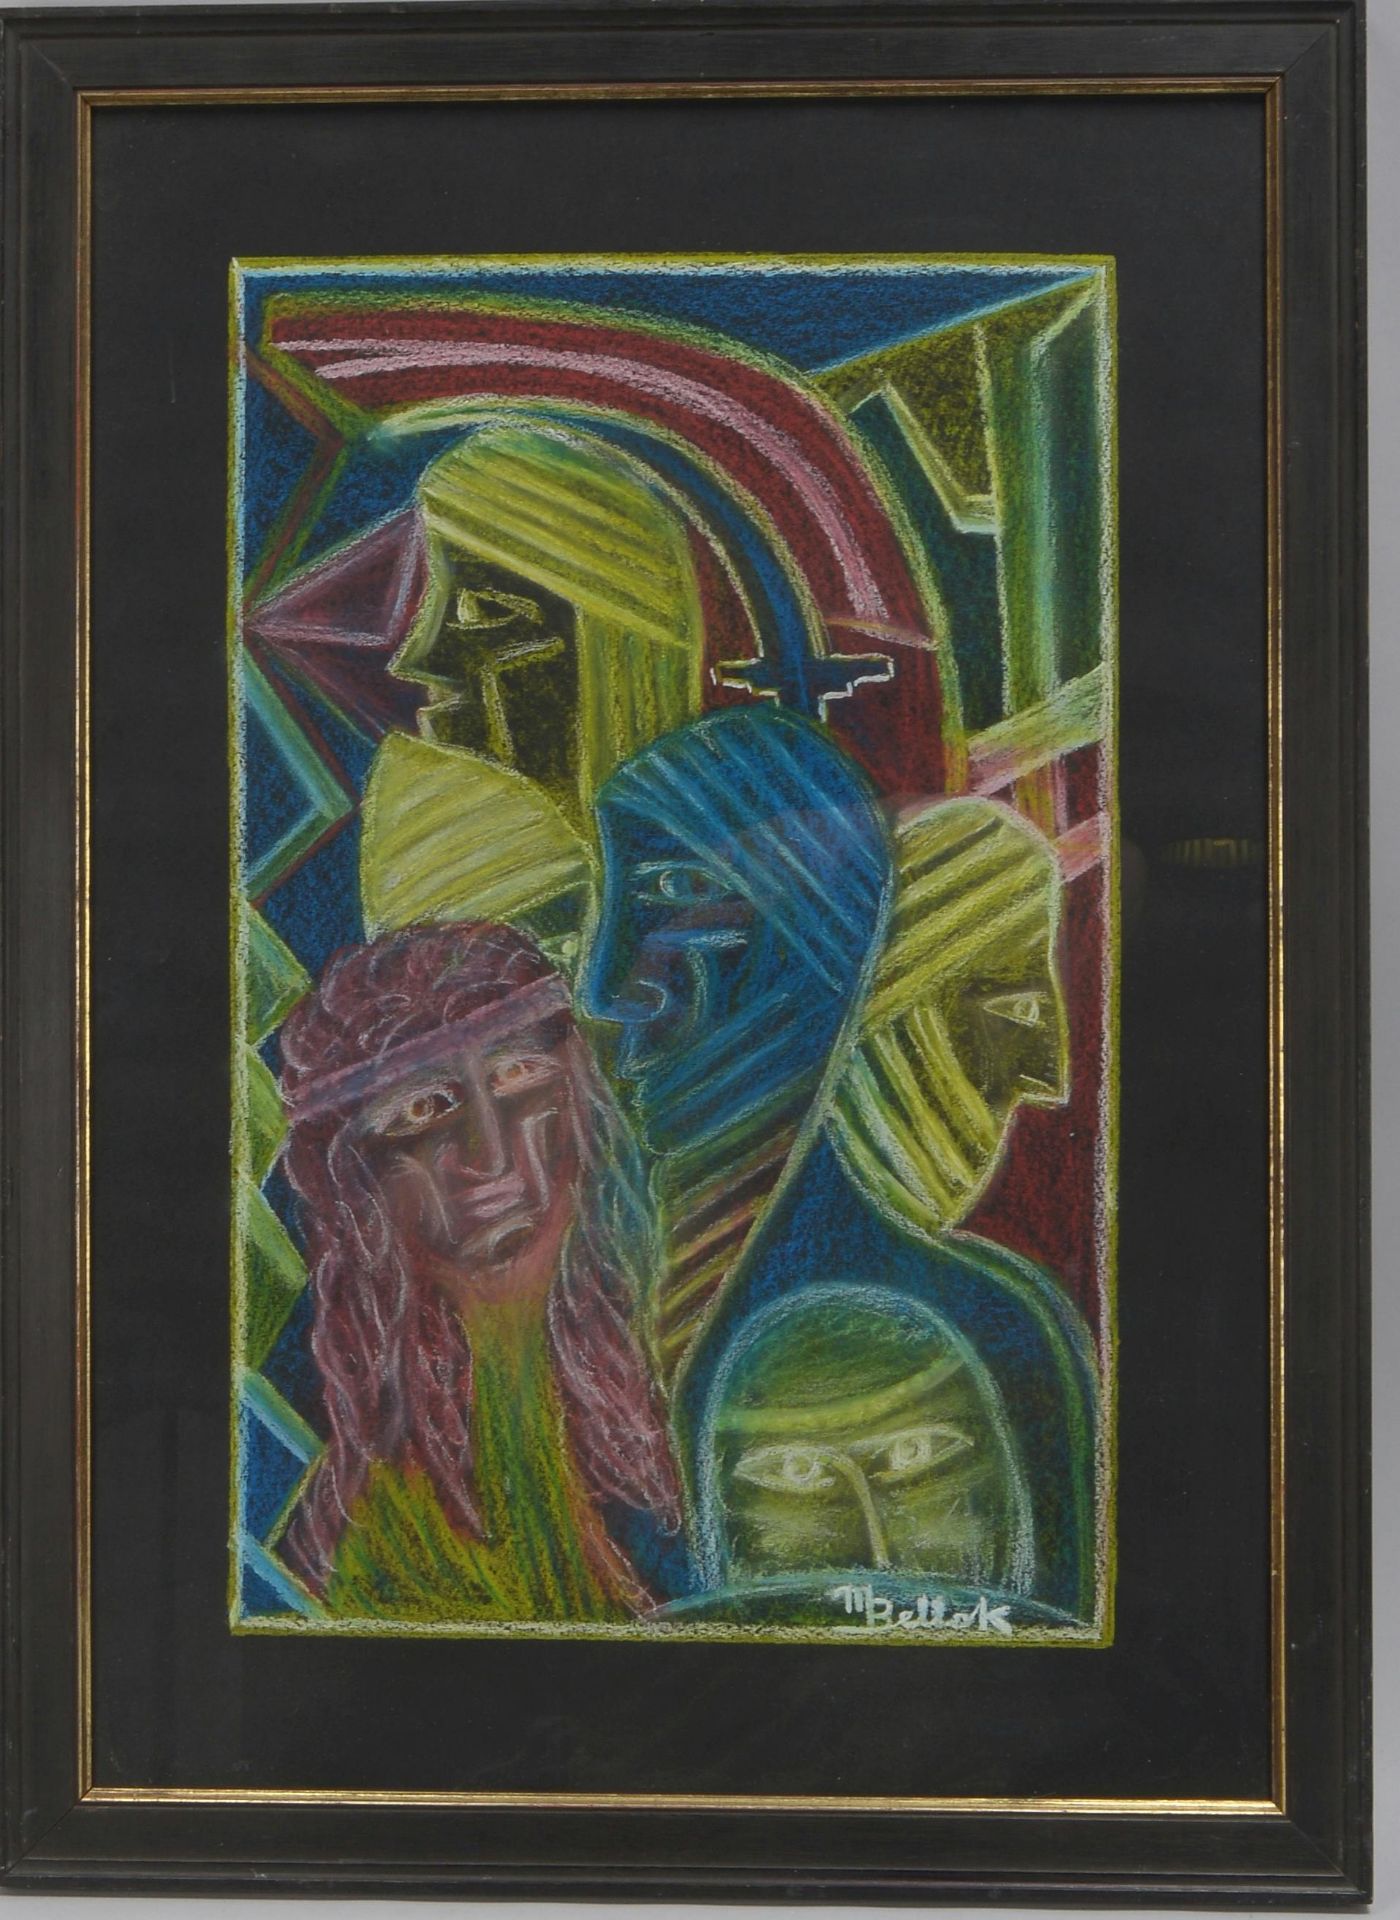 Bellock, M., 'Personendarstellung', Farbkreide, signiert, hinter Glas gerahmt; Rahmenmaße 75 x 54 cm